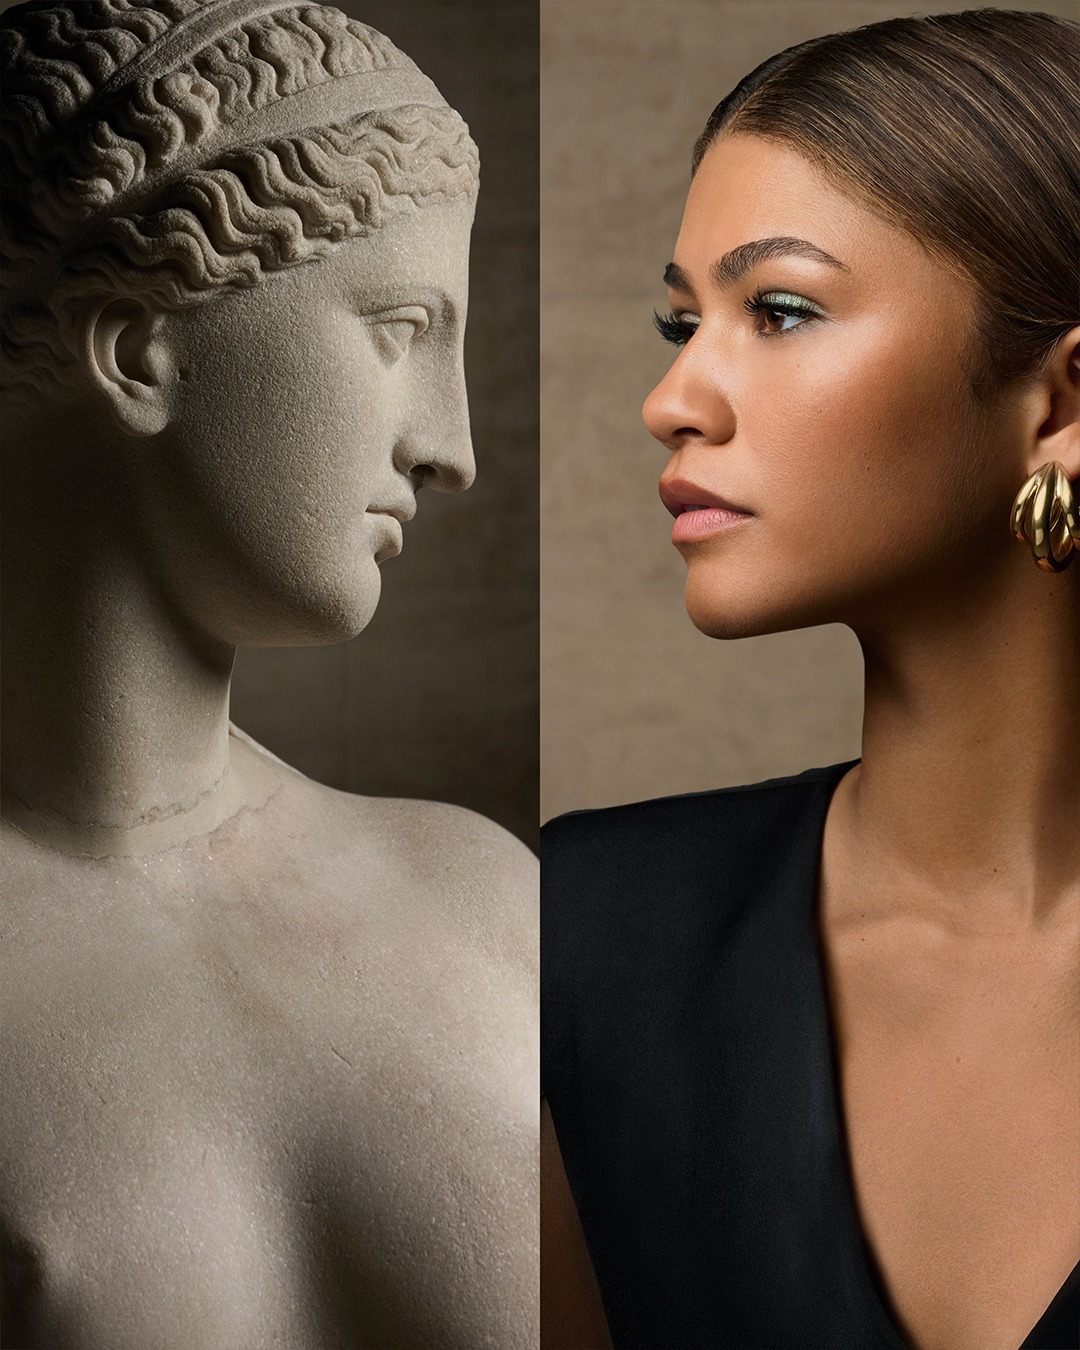 Lancôme x Louvre: Η νέα συνεργασία ενθουσιάζει τους λάτρεις της ομορφιάς και της τέχνης